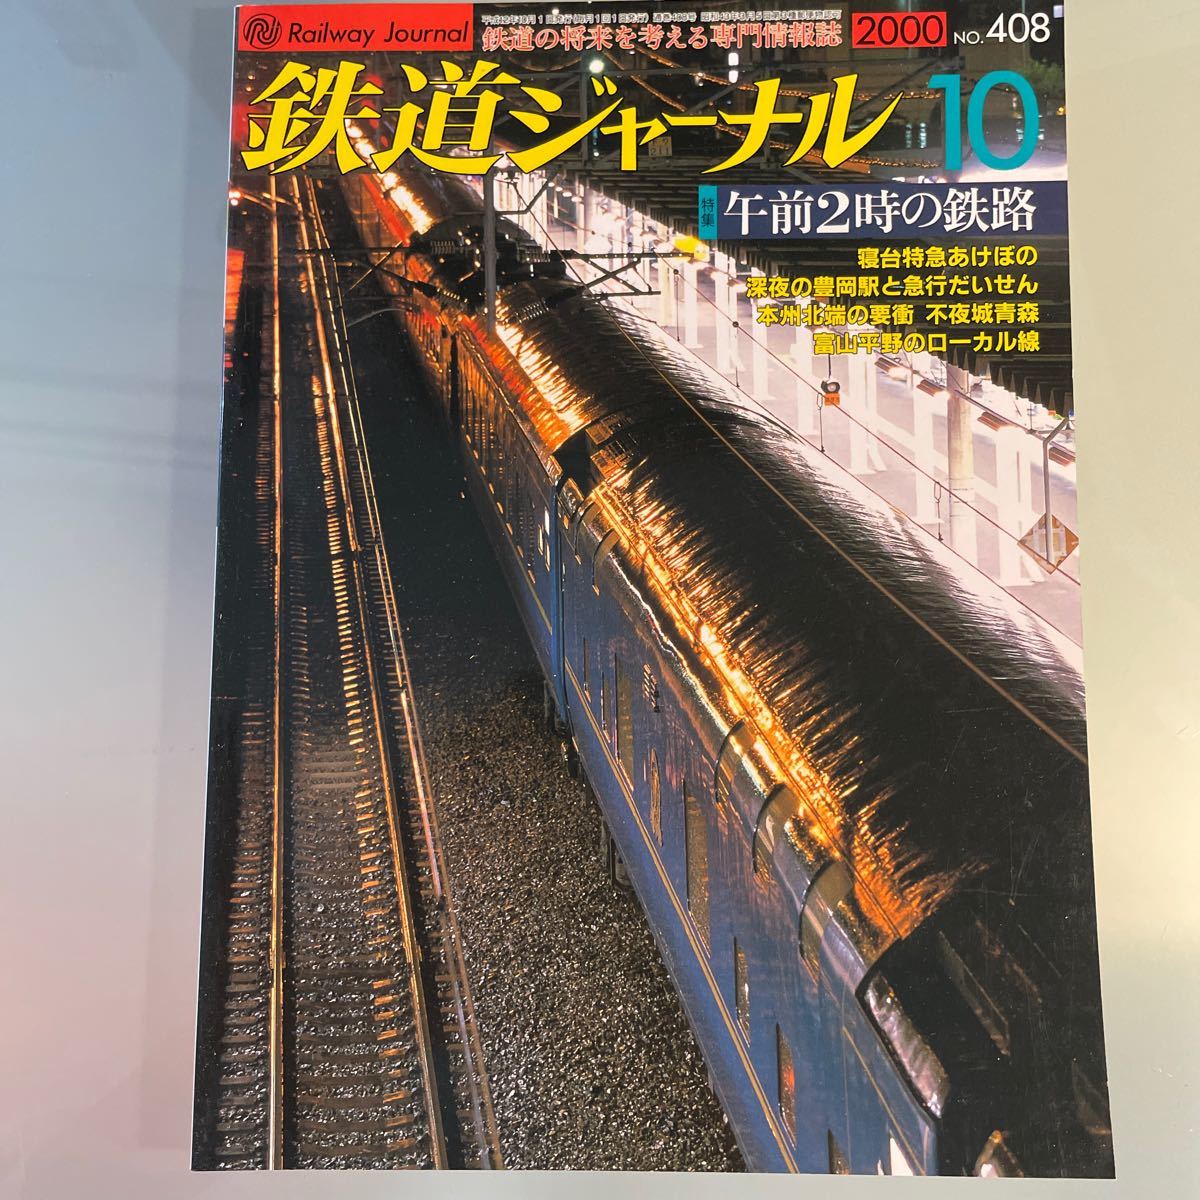 鉄道ジャーナル 2000.8 午前2時の鉄路 富山平野のローカル線